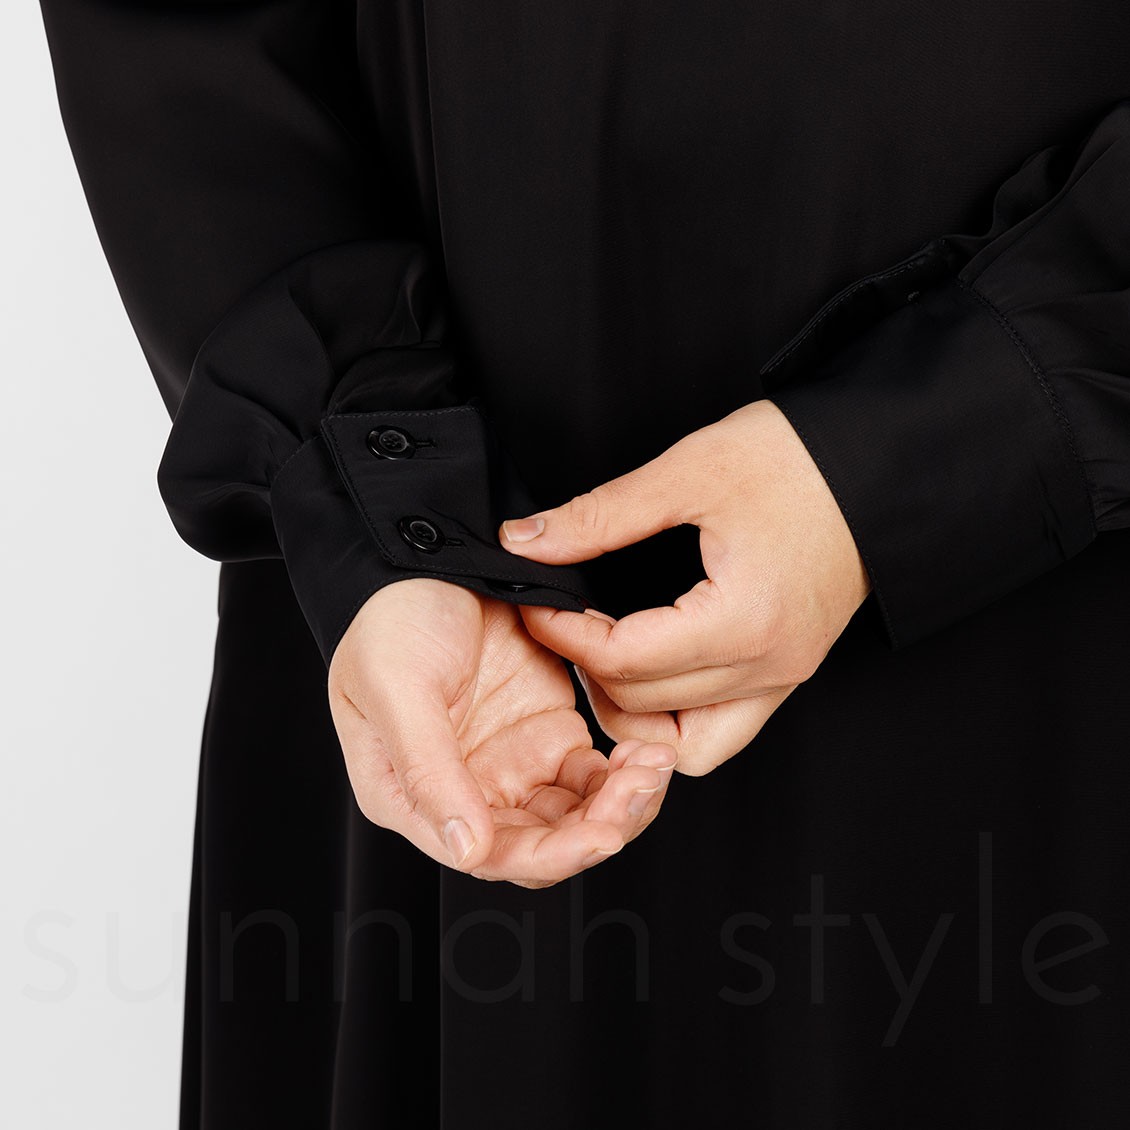 Sunnah Style Pearl Button Cuff Abaya Black